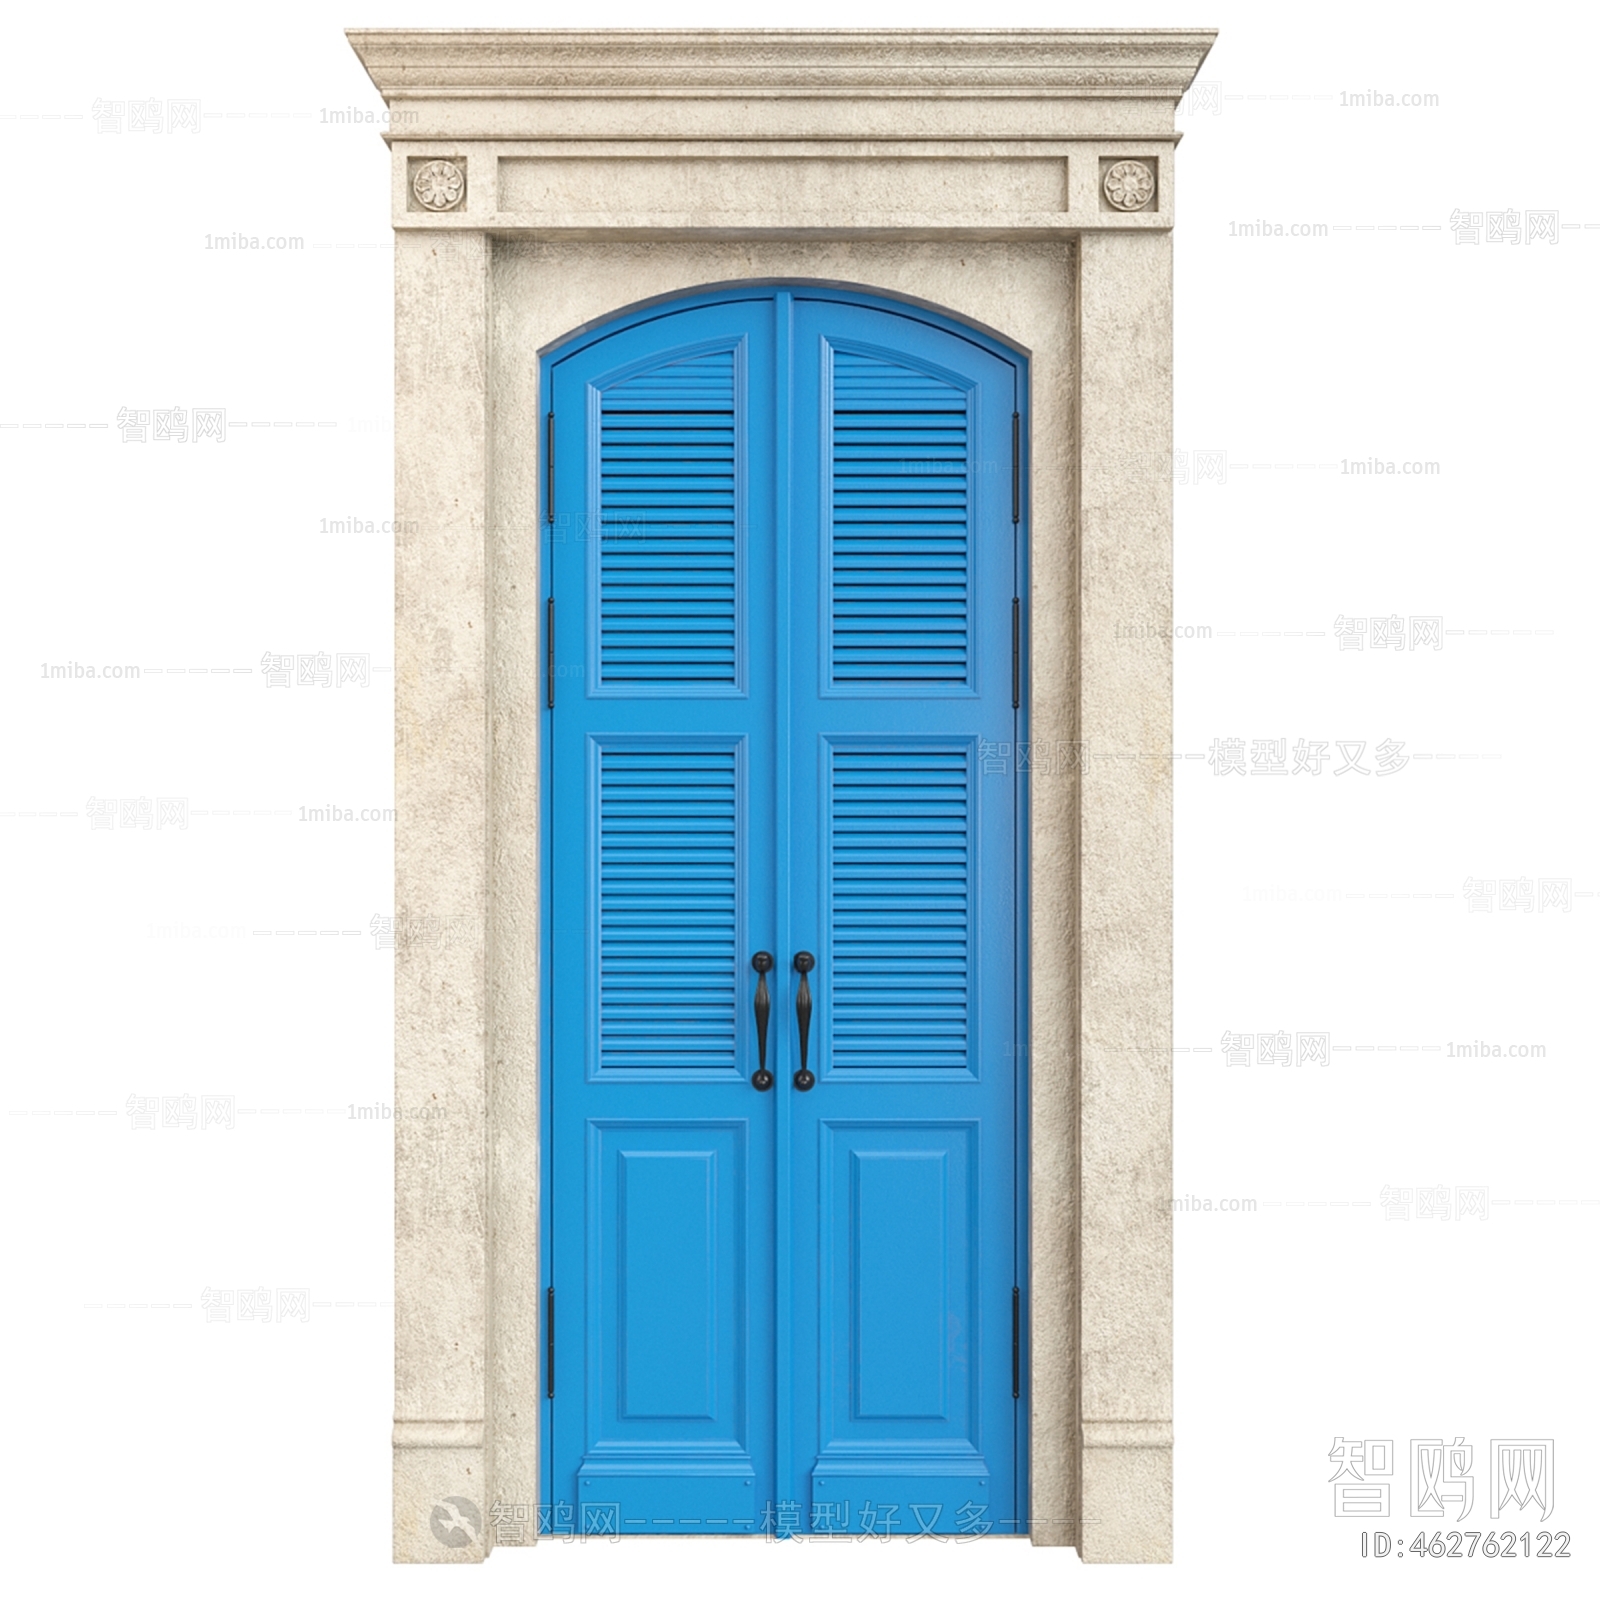 American Style Entrance Door